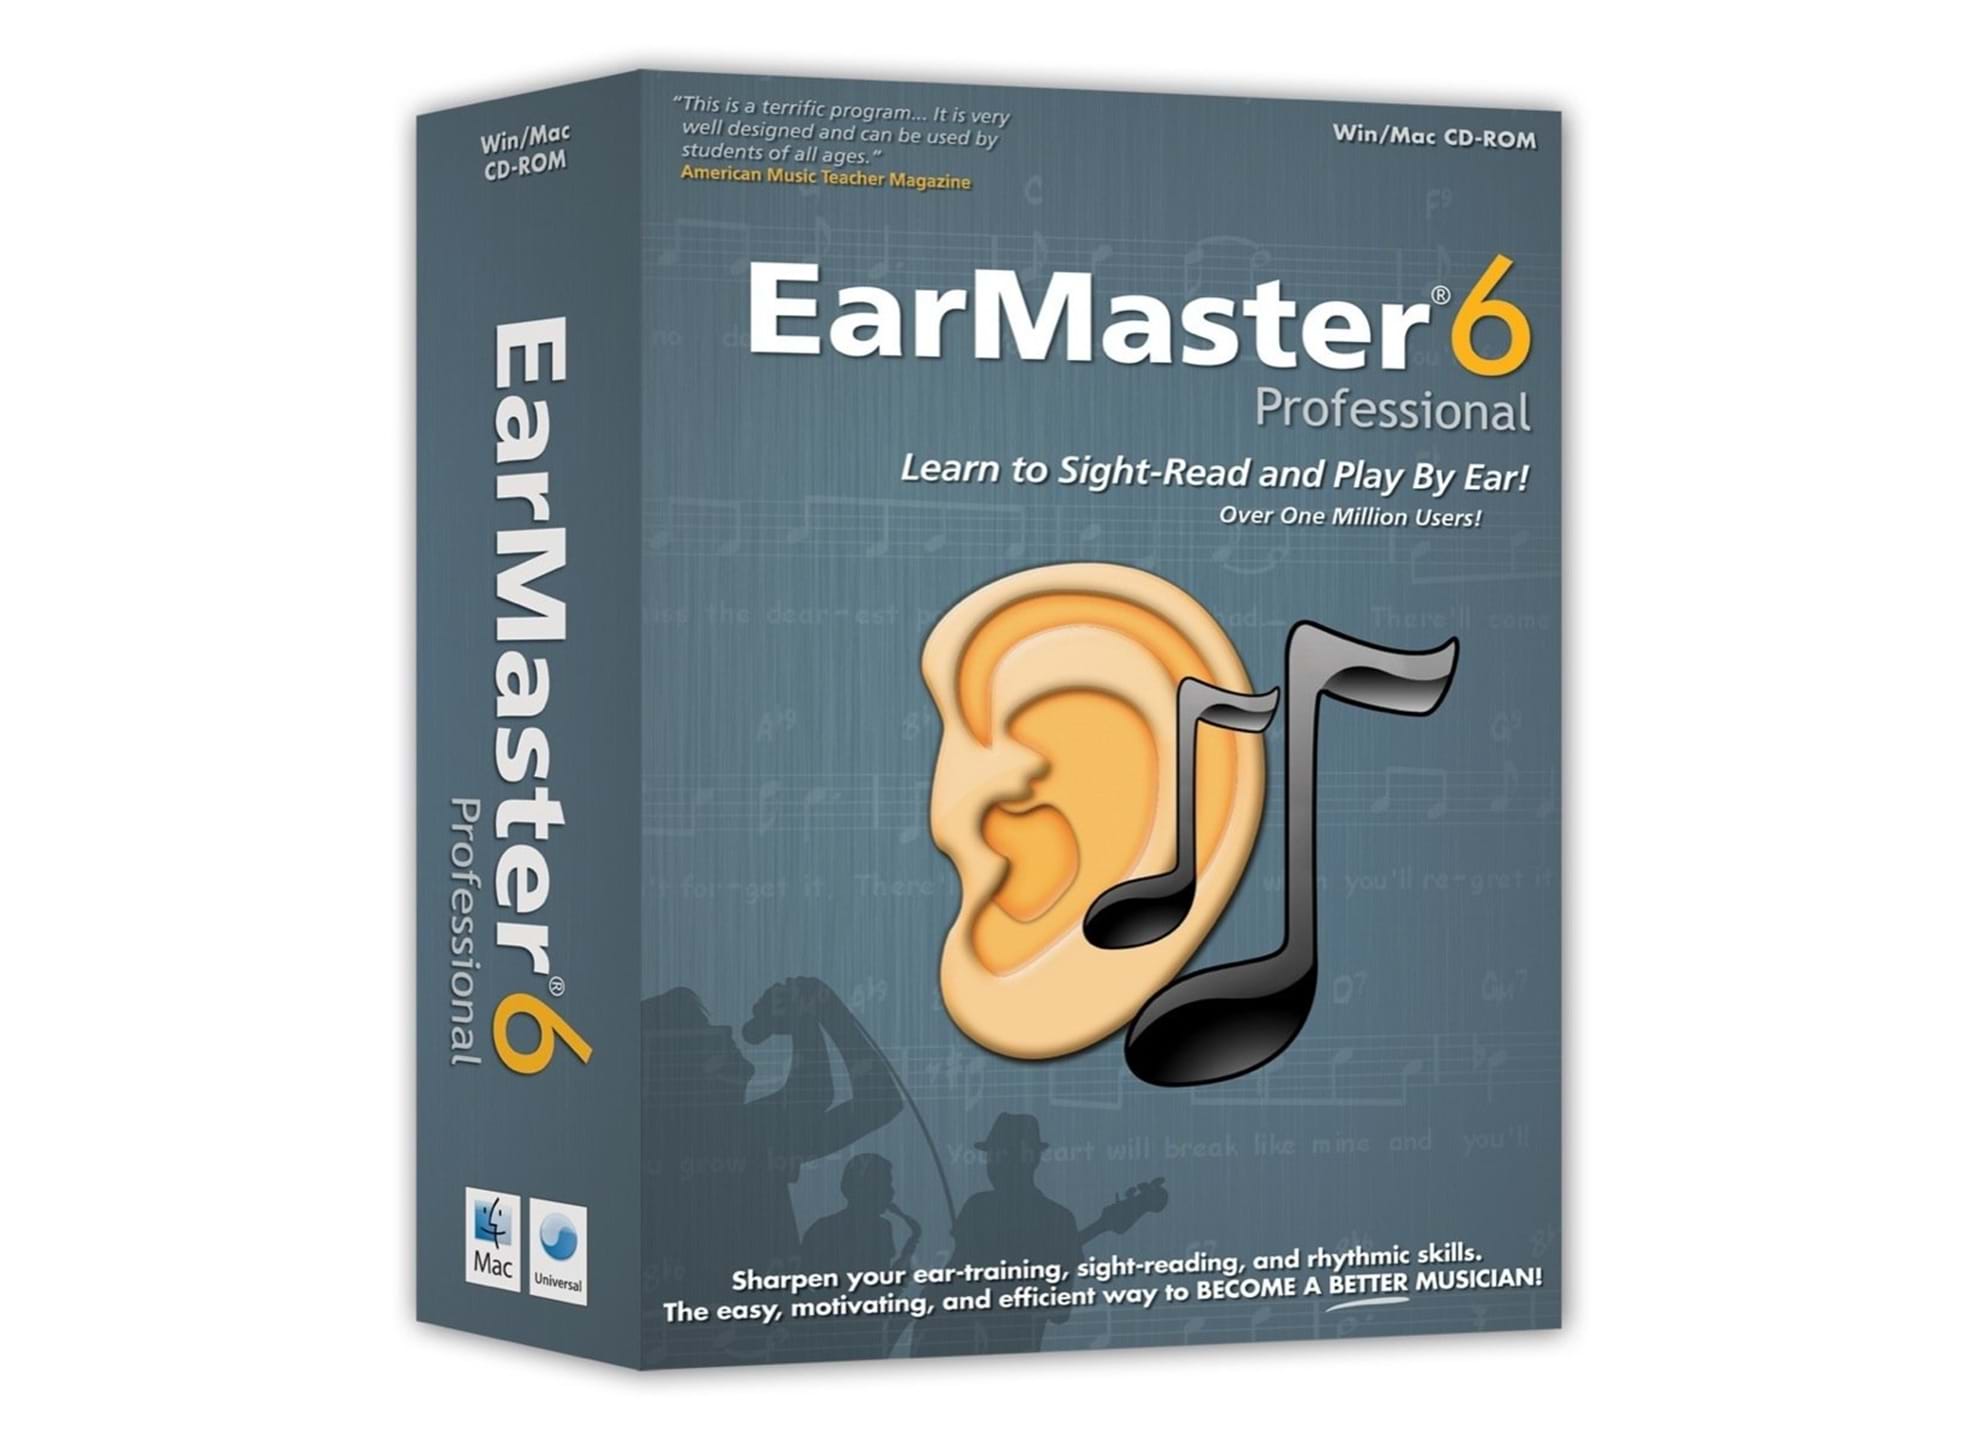 earmaster pro linux